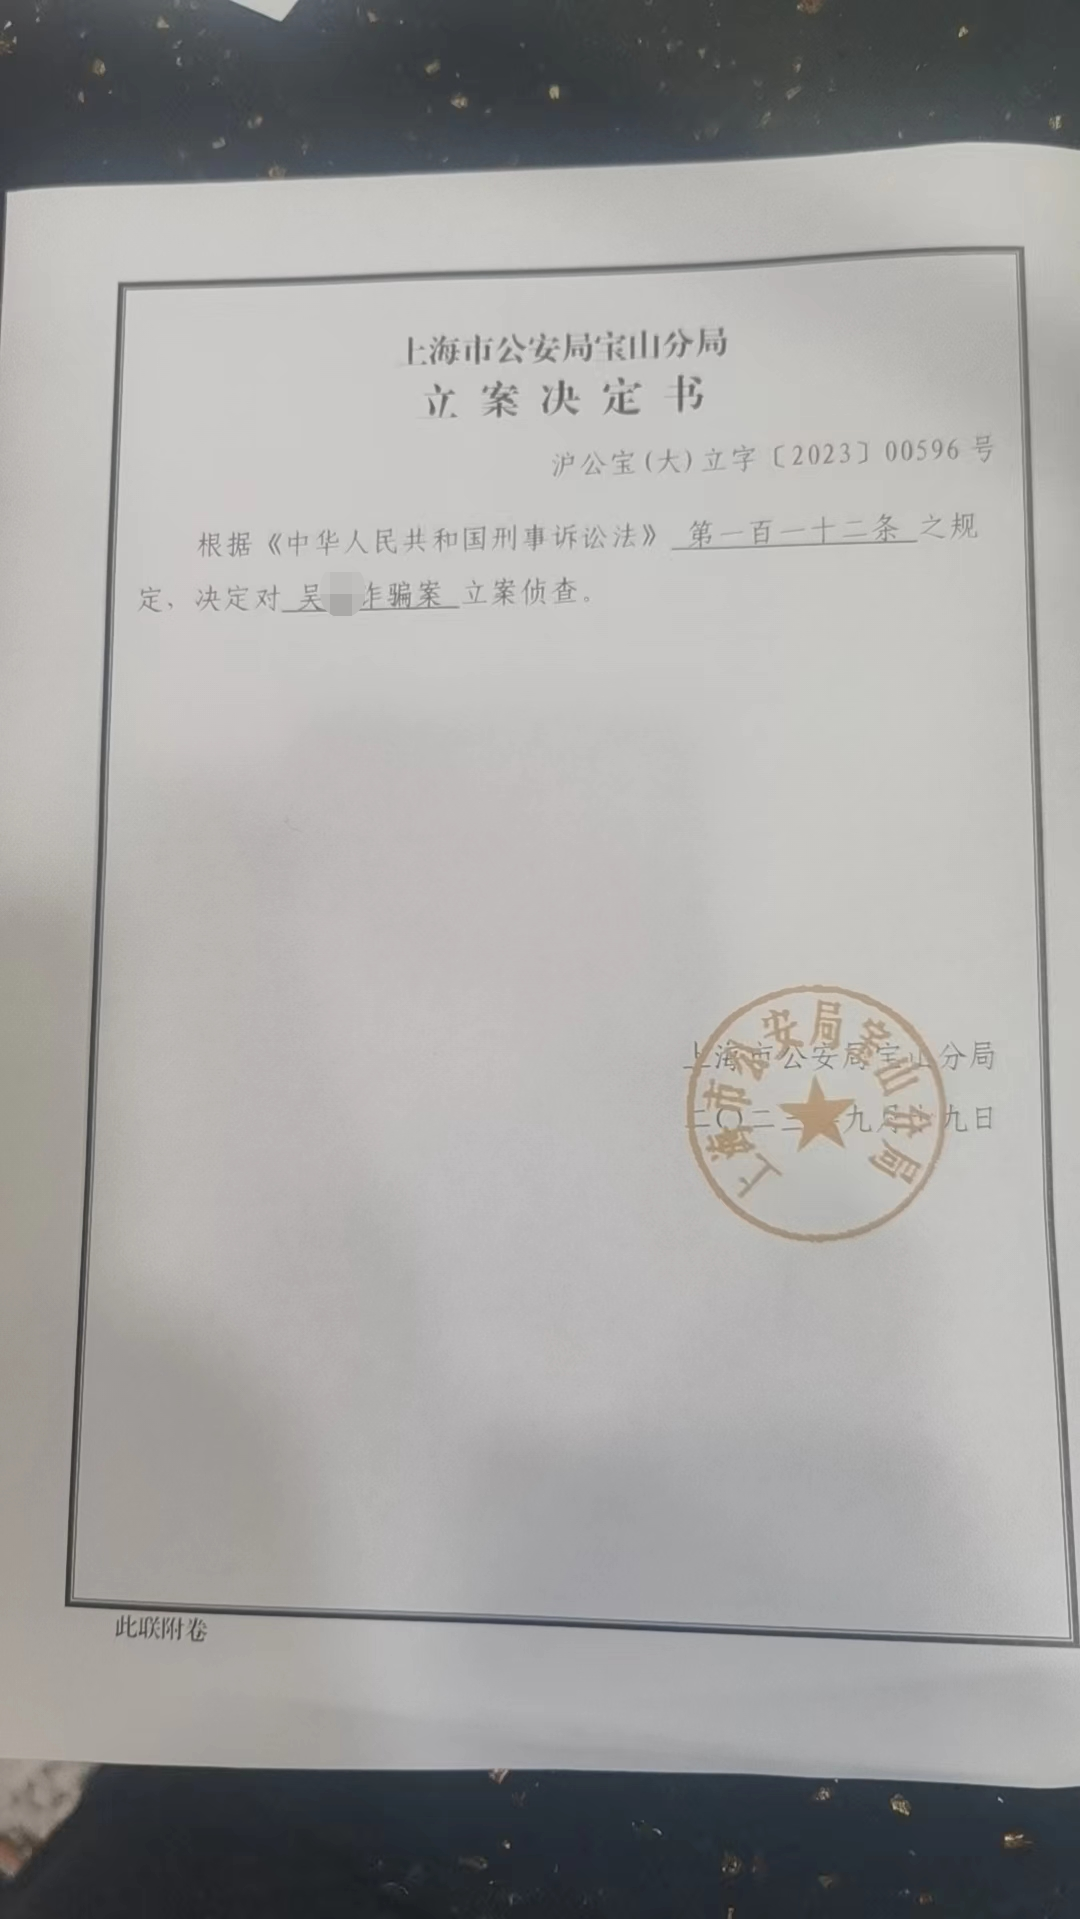 受骗的摄影器材供应商向记者出示了上海市公安局宝山分局立案决定书